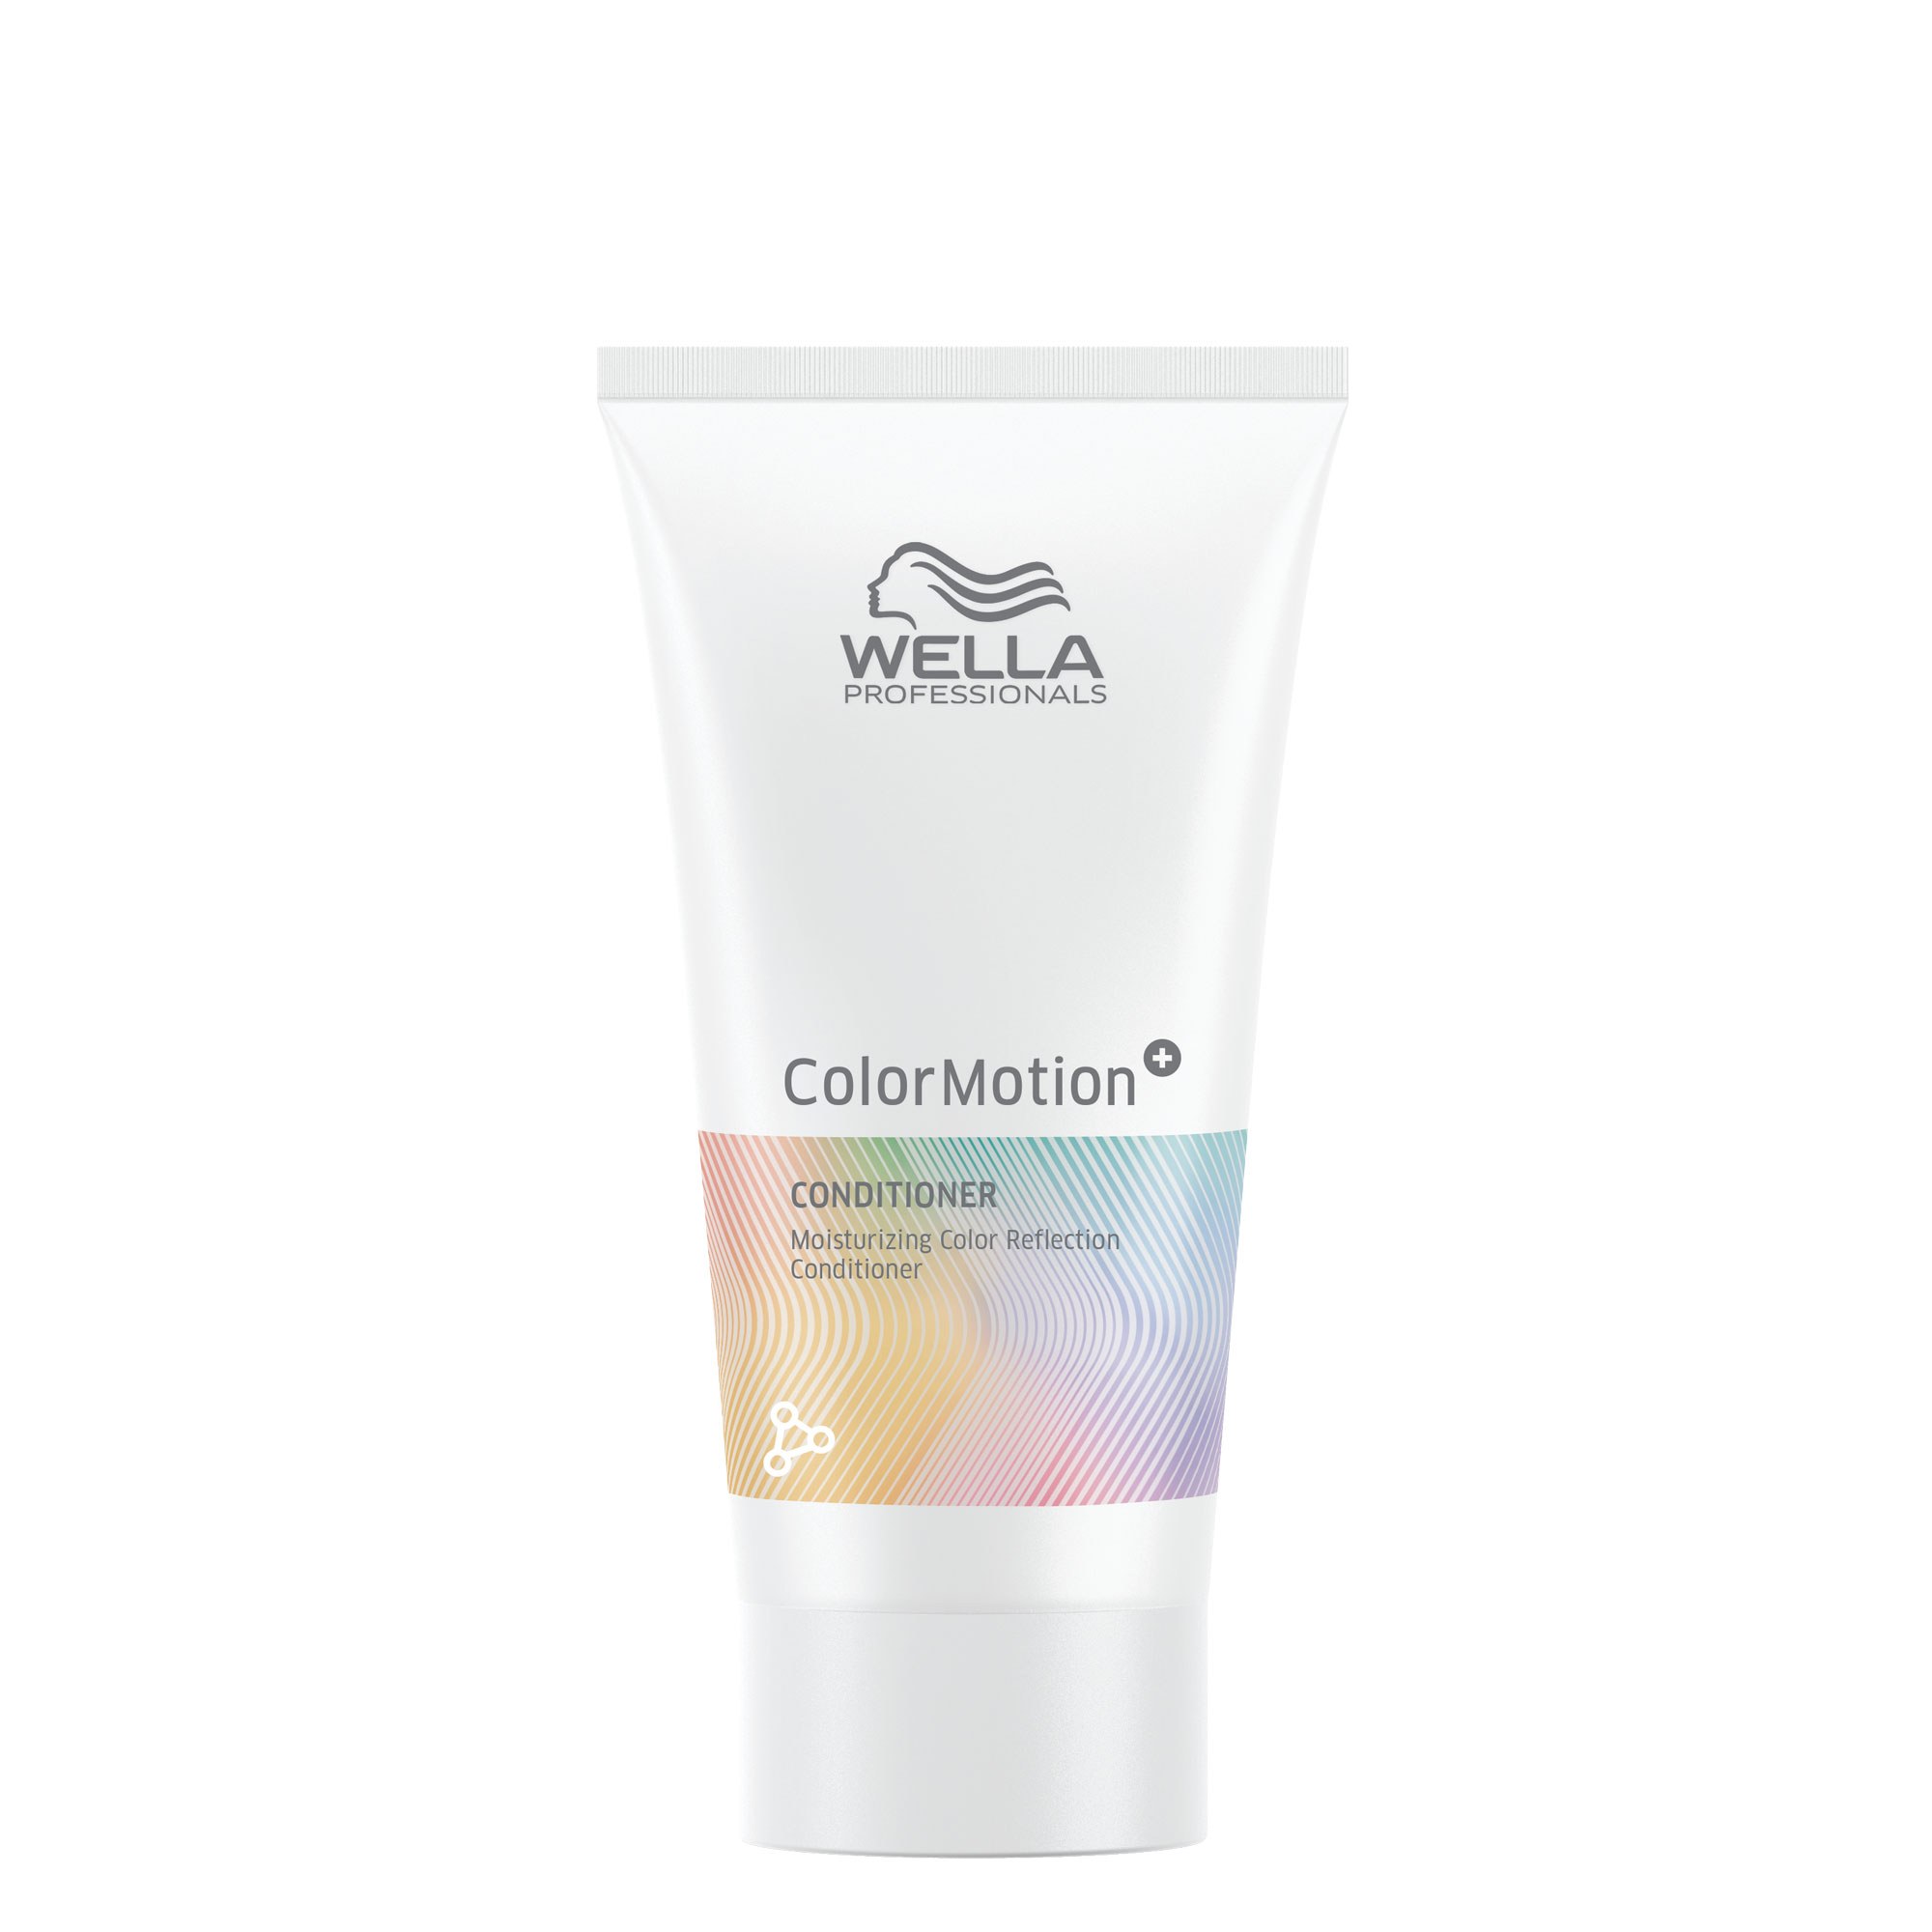 Wella ColorMotion+ Conditioner